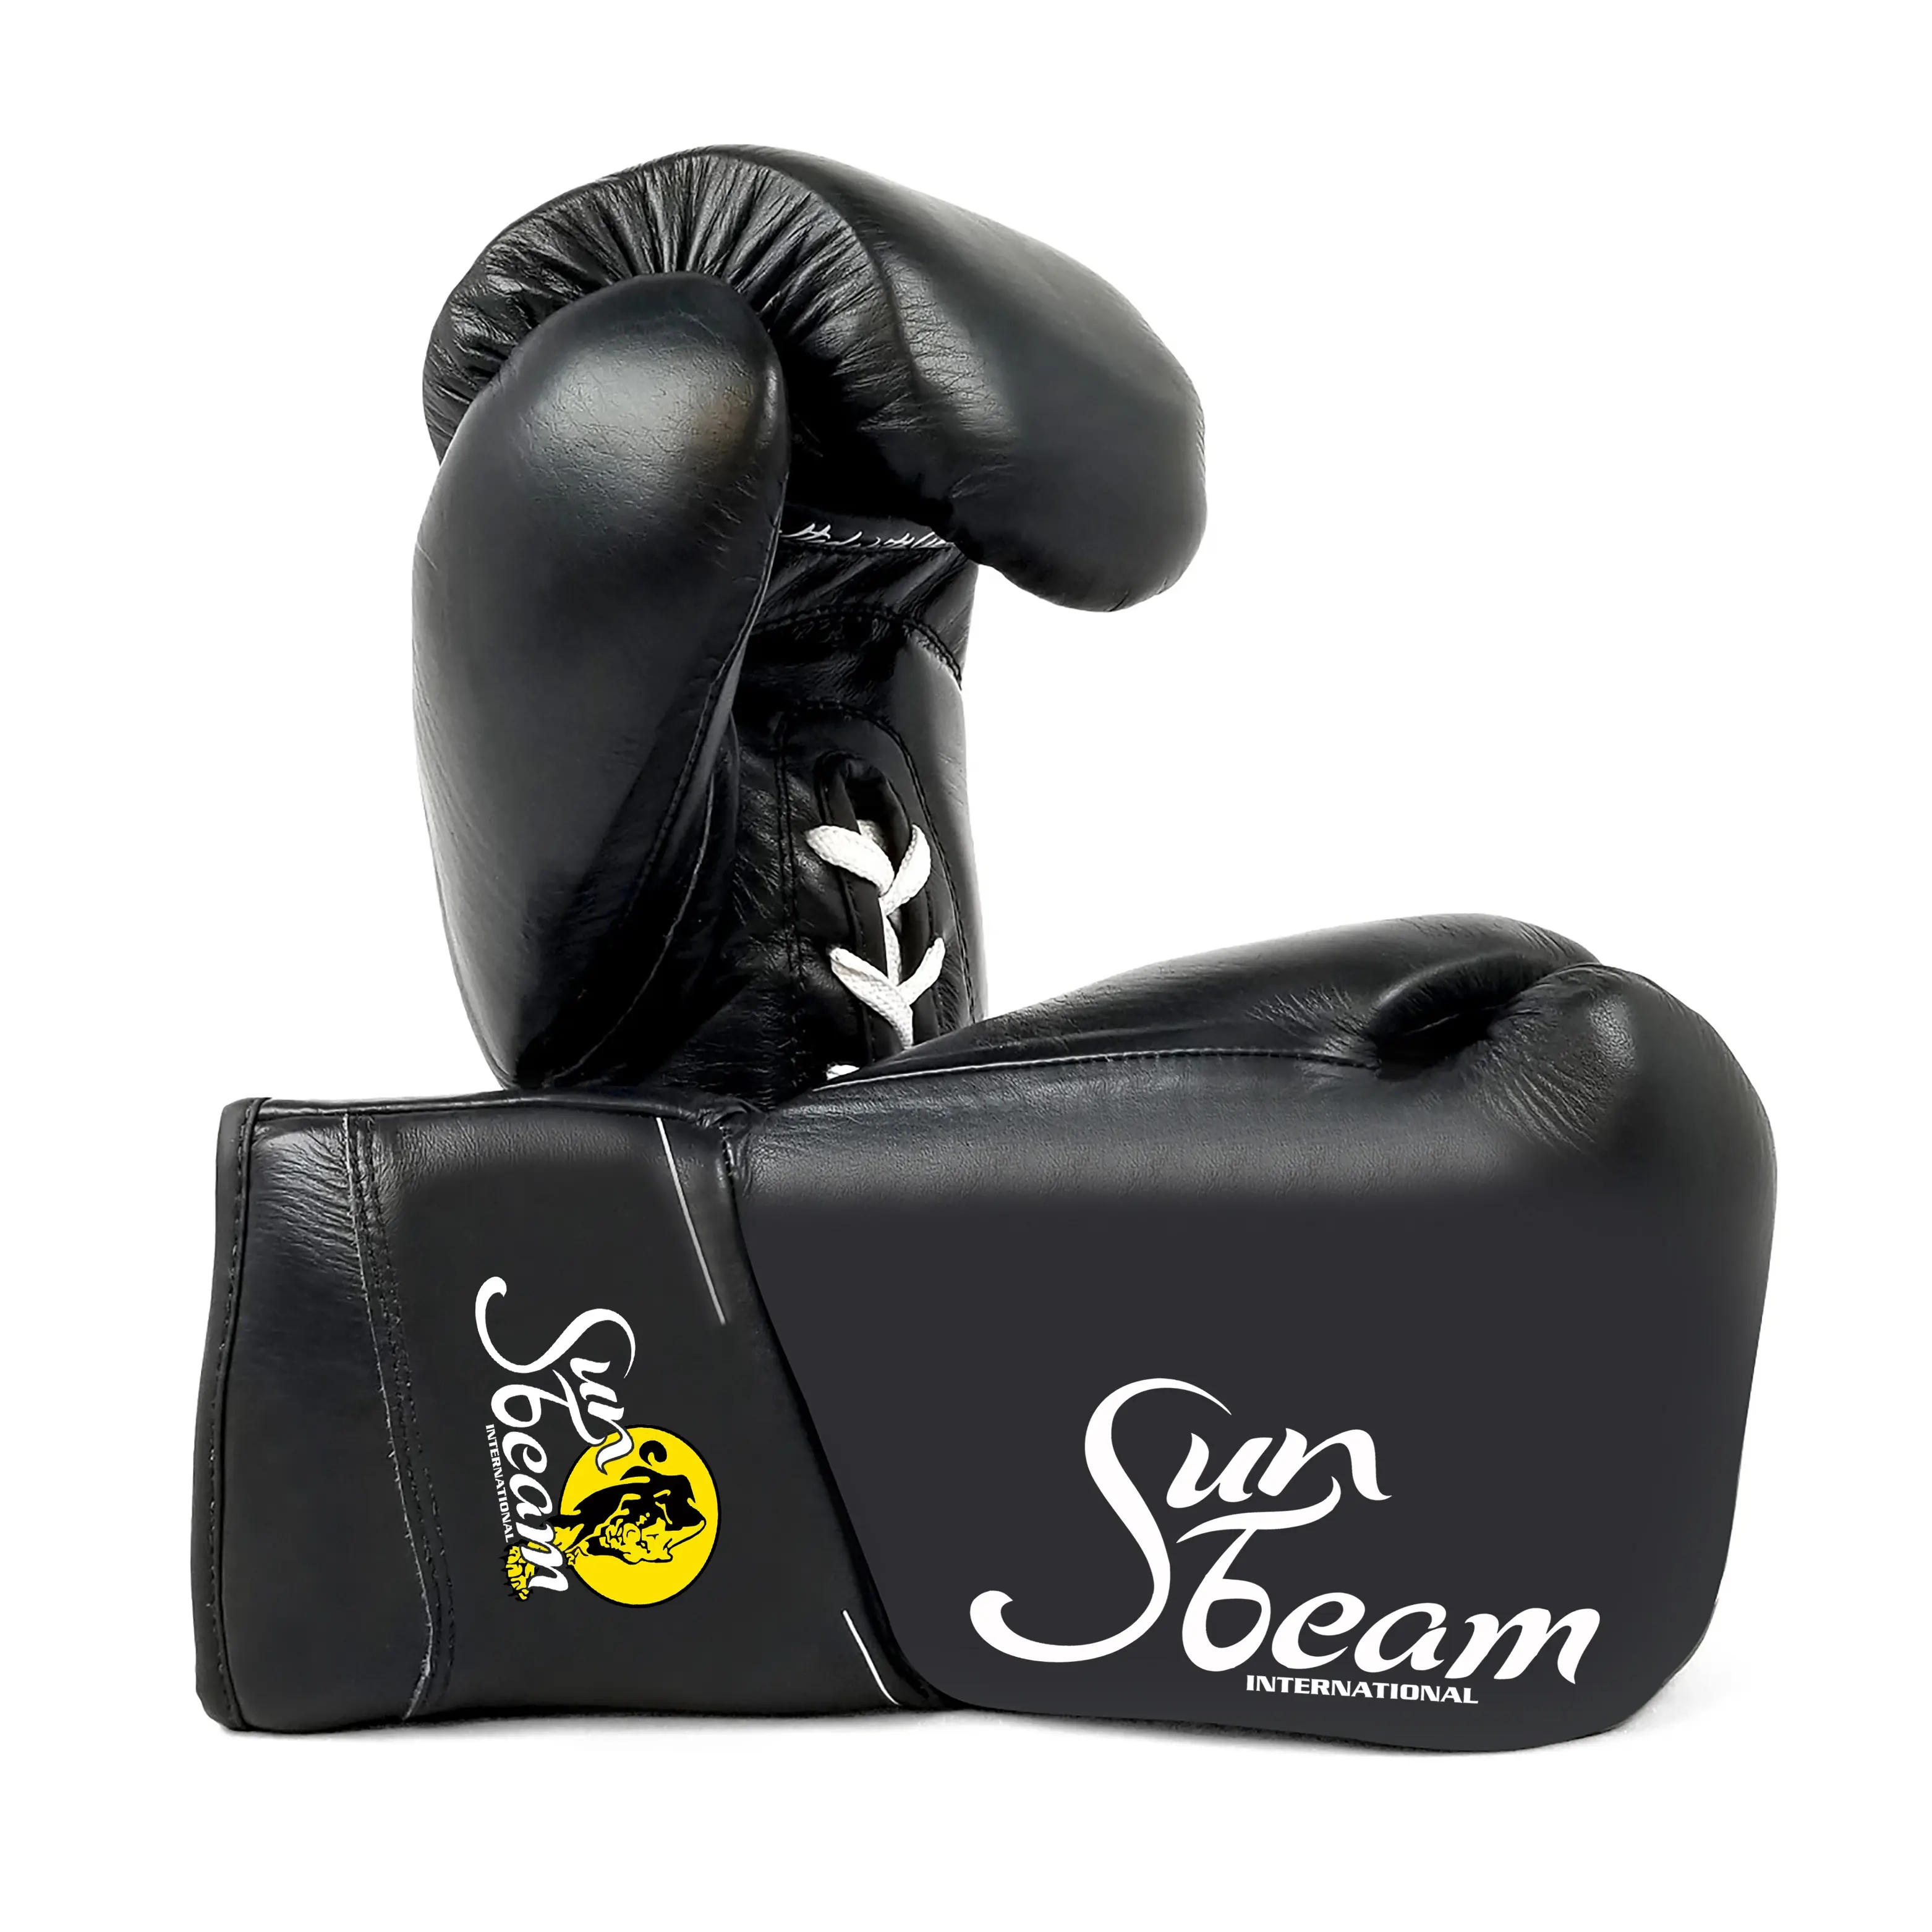 Sampel pengiriman gratis bisa dinegosiasikan sarung tangan tinju kulit profesional MMA Anda sendiri desain buatan khusus